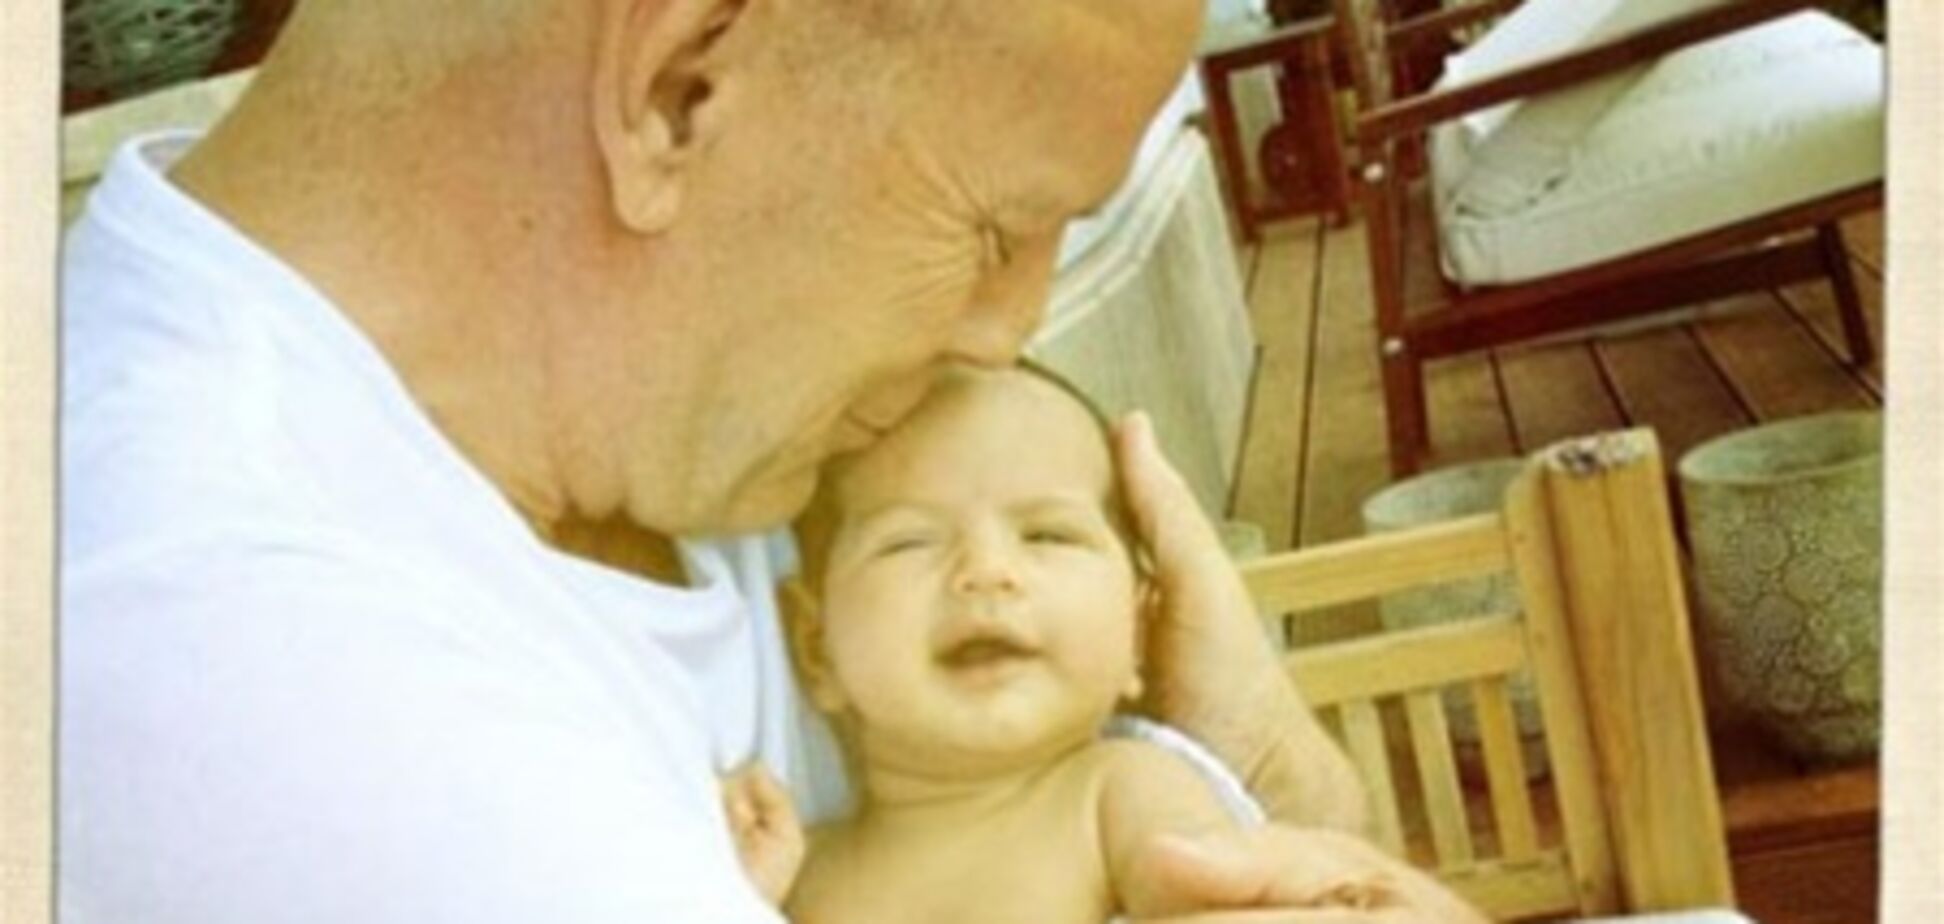 Брюс Уиллис показал новорожденную дочь. Фото, 11 мая 2012